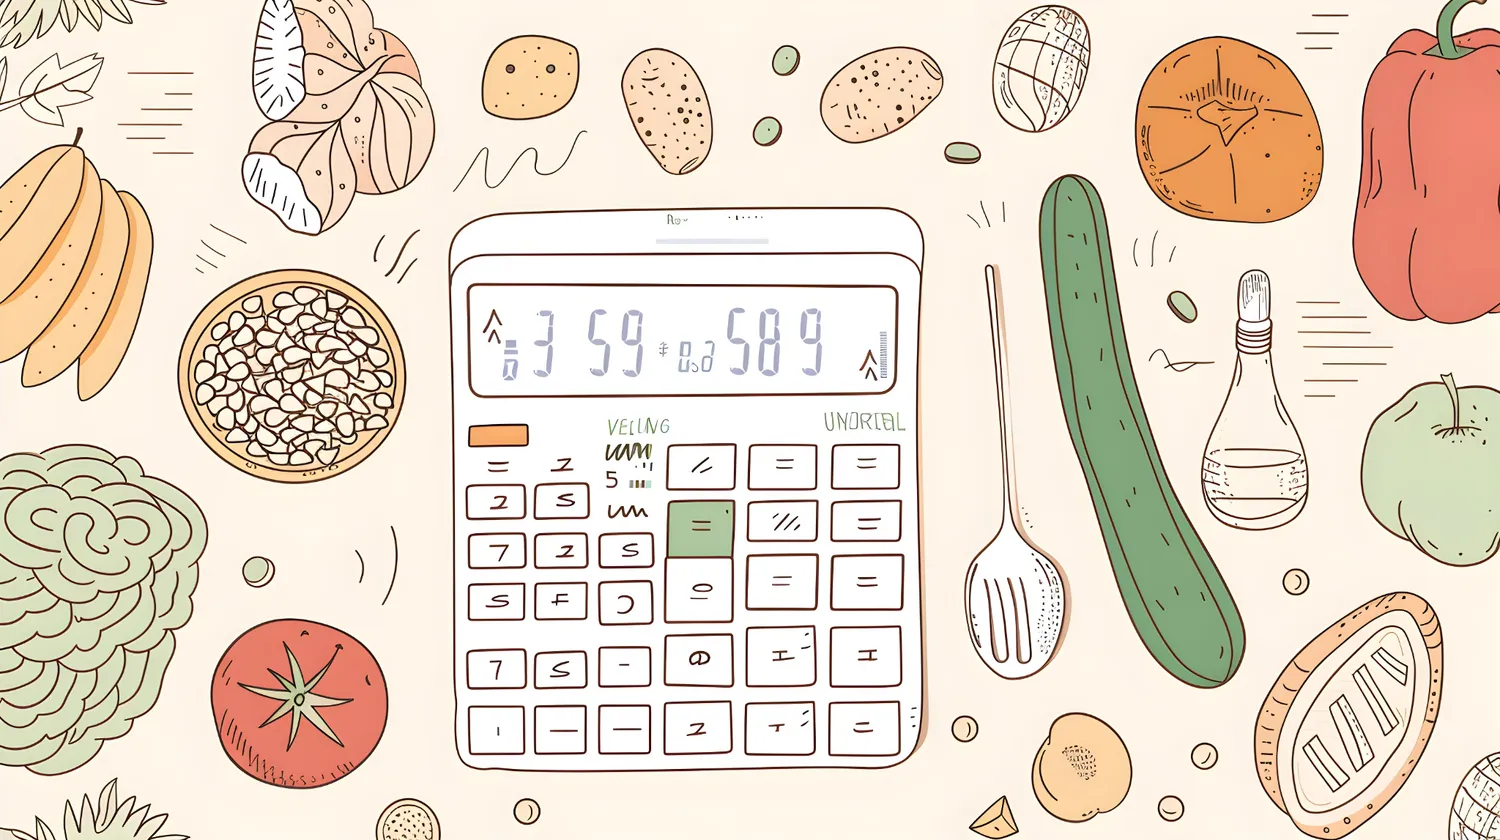 Как вычислить стоимость блюда в ресторане